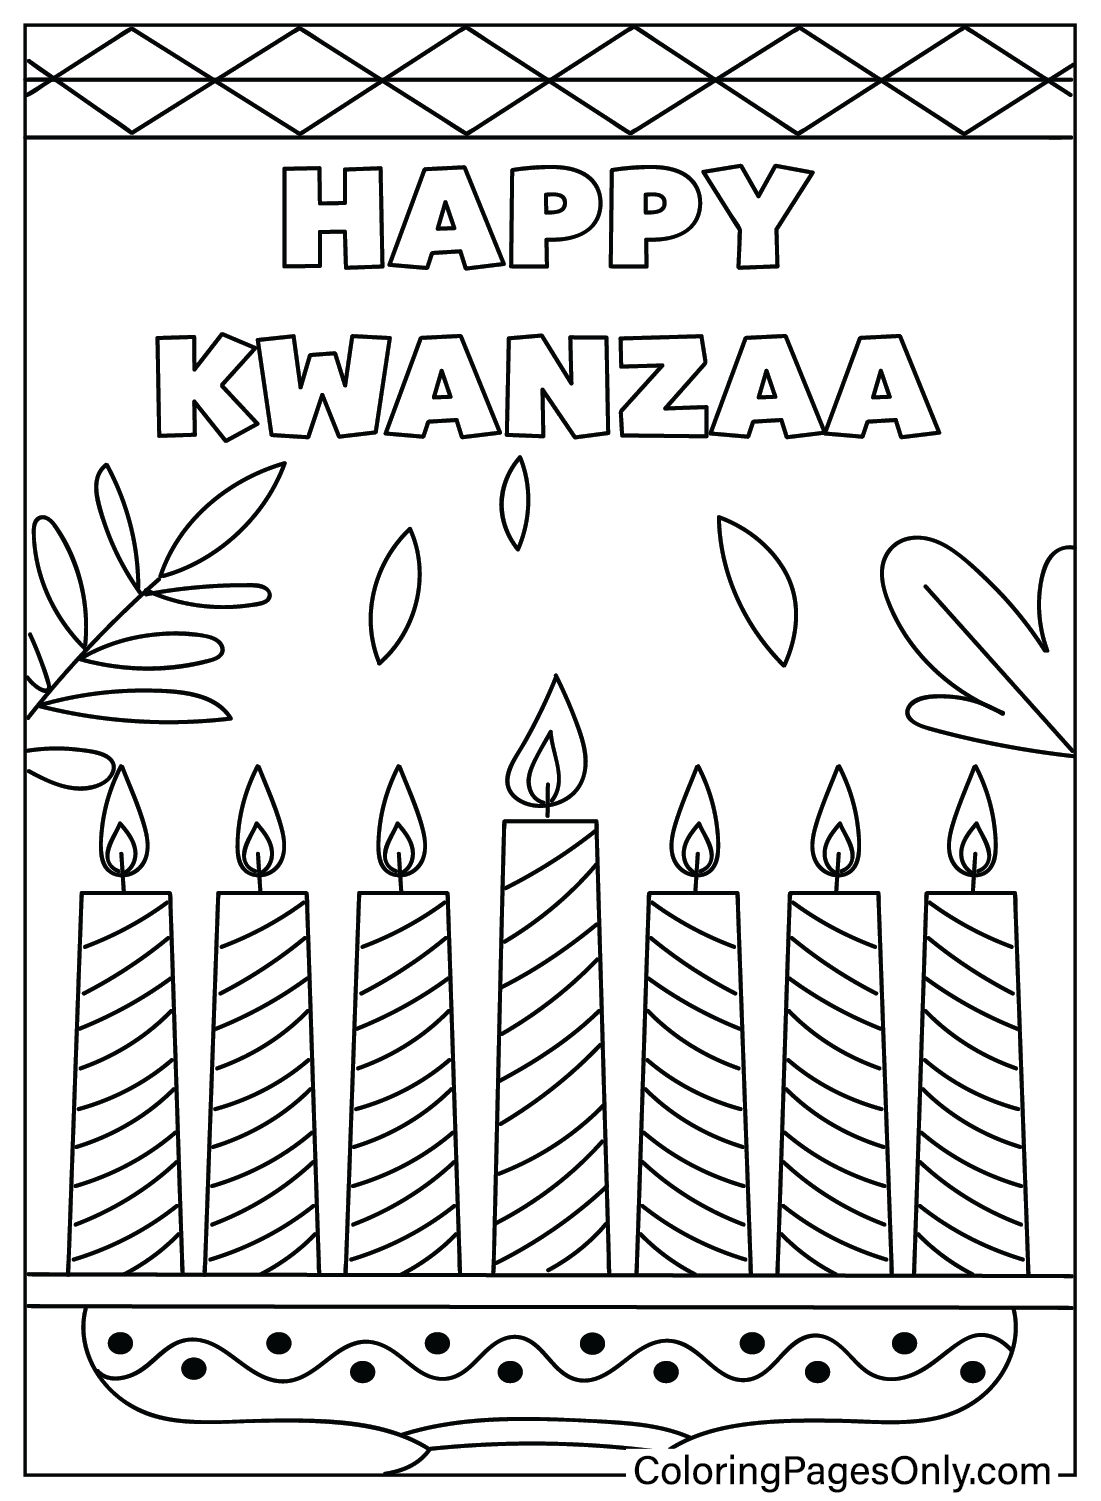 Página para colorear de Kwanzaa para imprimir gratis de Kwanzaa